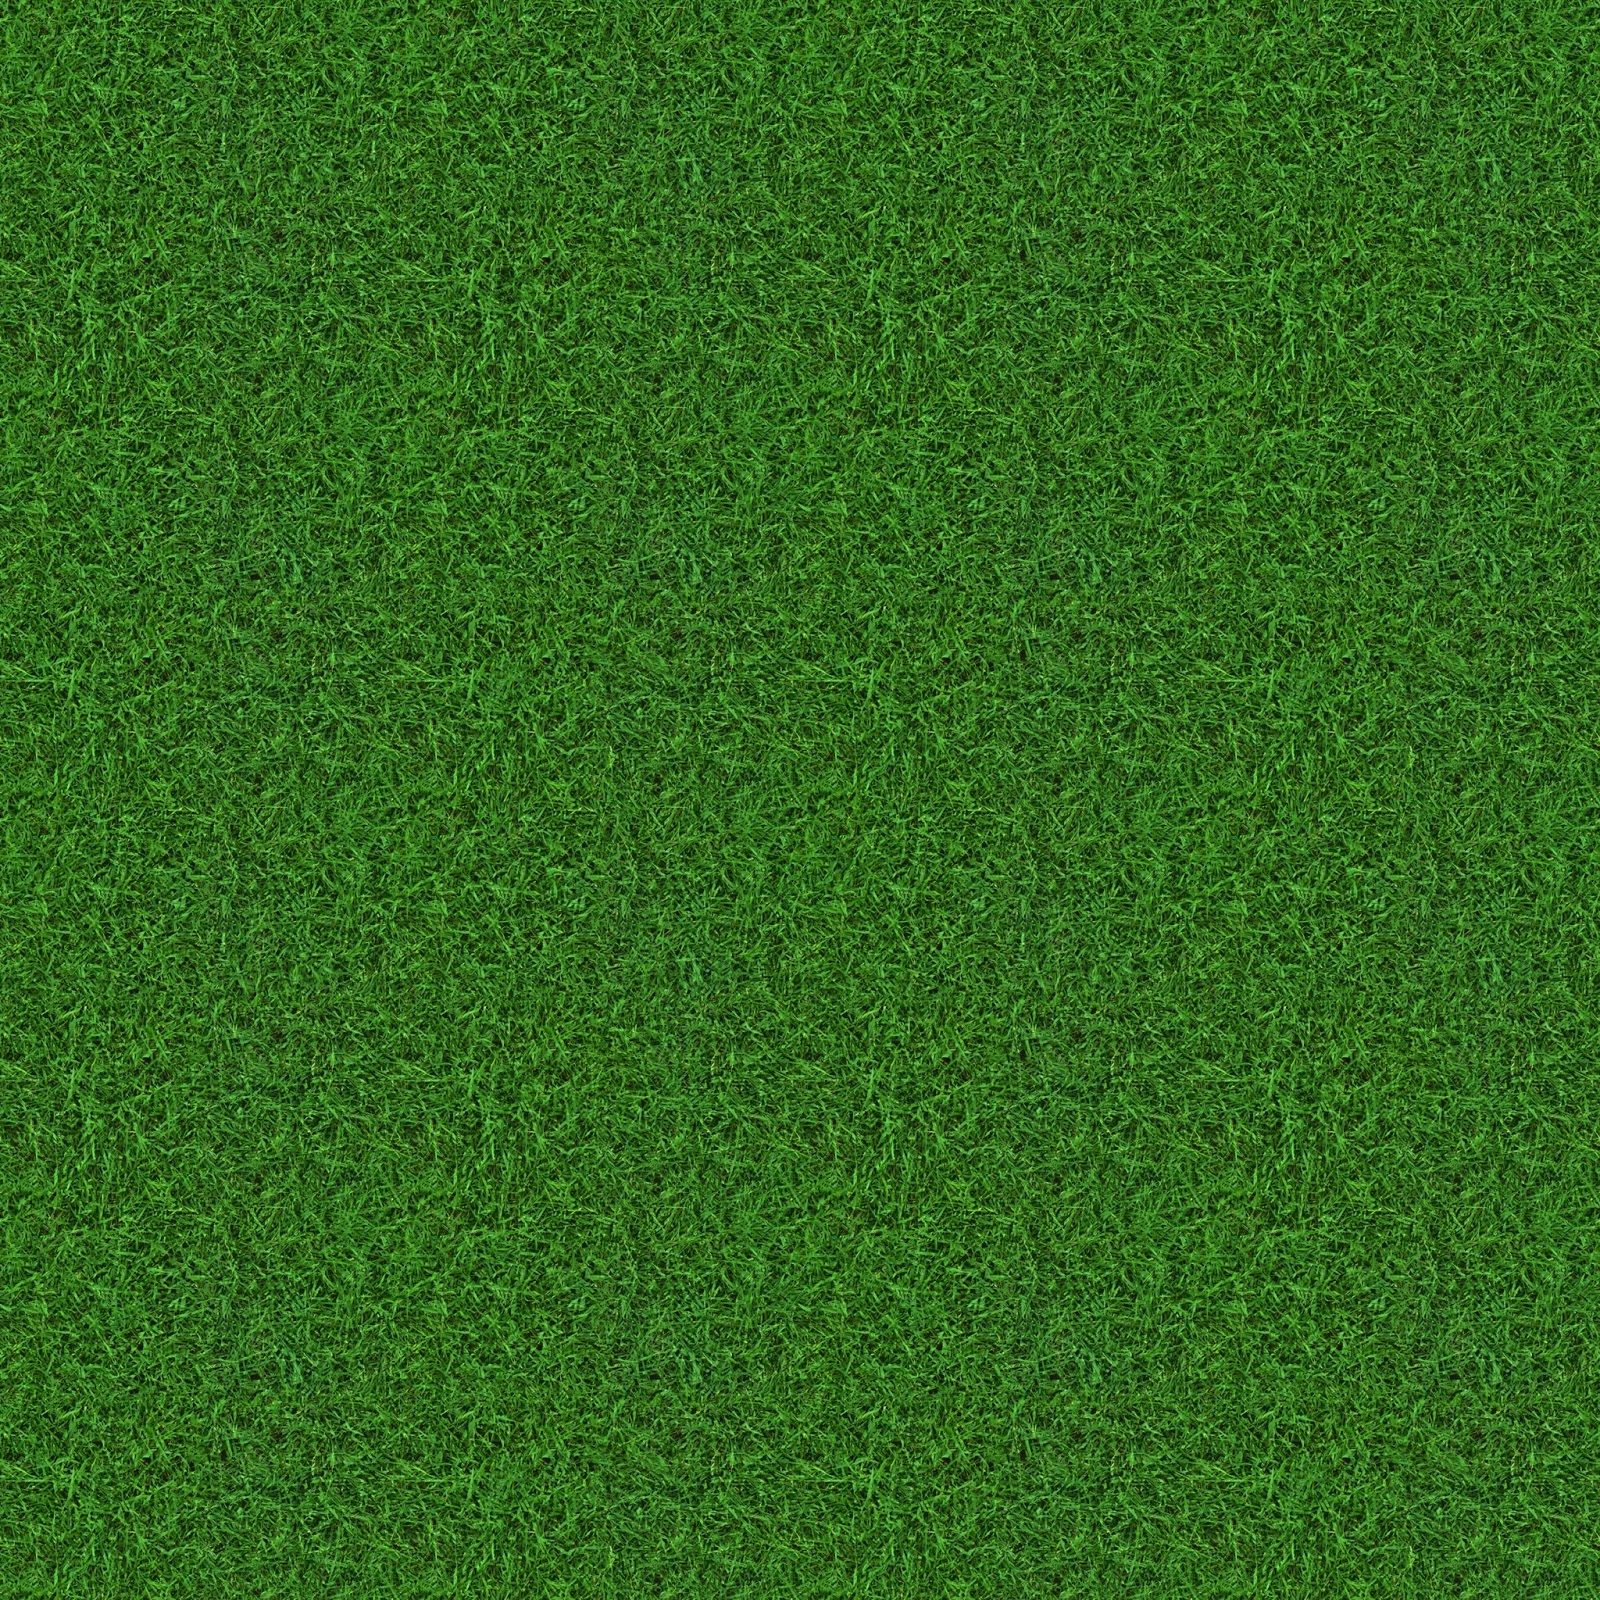 high quality grass texture seamless